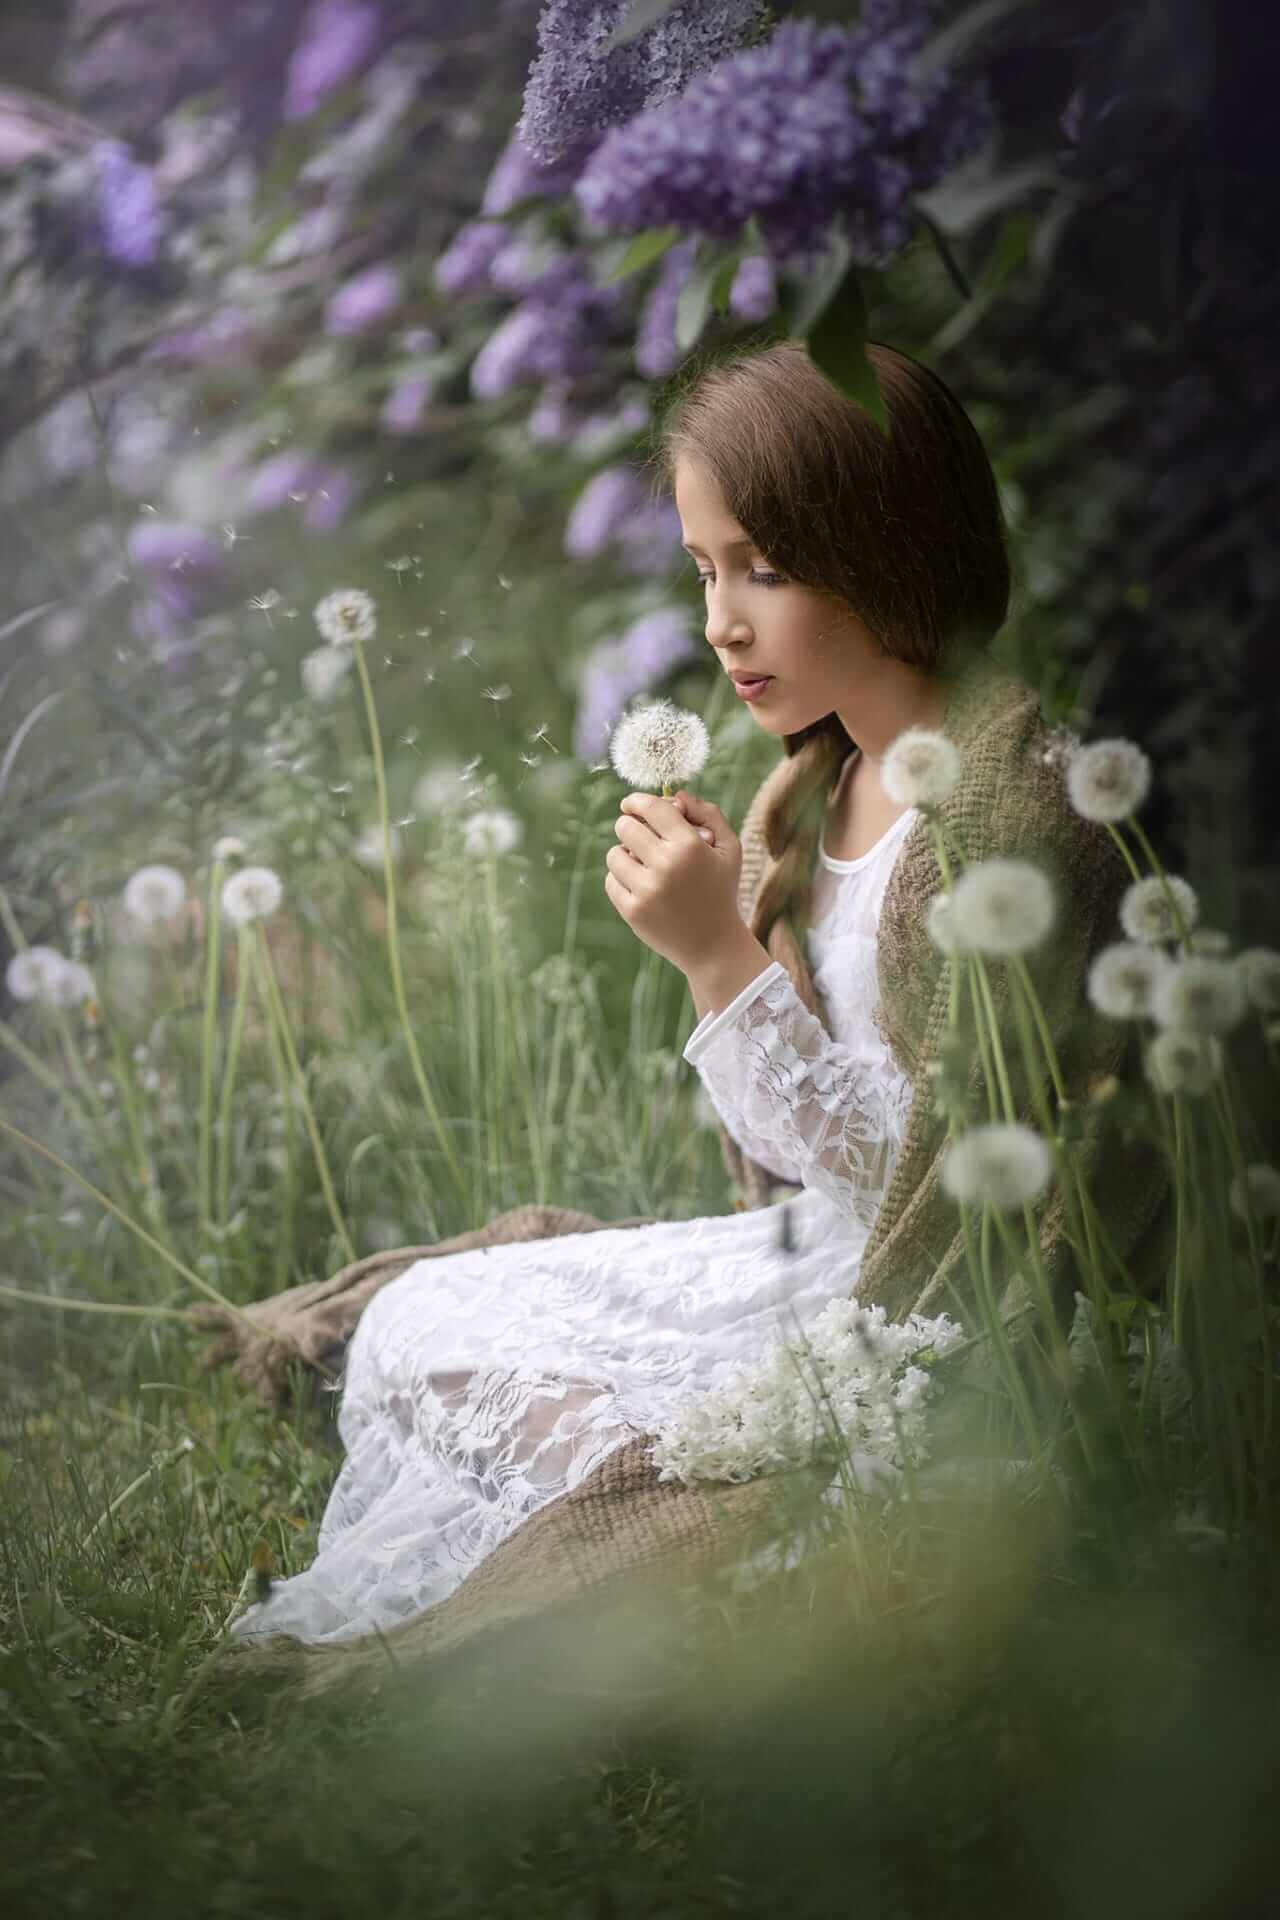 Une fille en robe blanche est assise dans l'herbe avec des fleurs de pissenlit et de lilas.